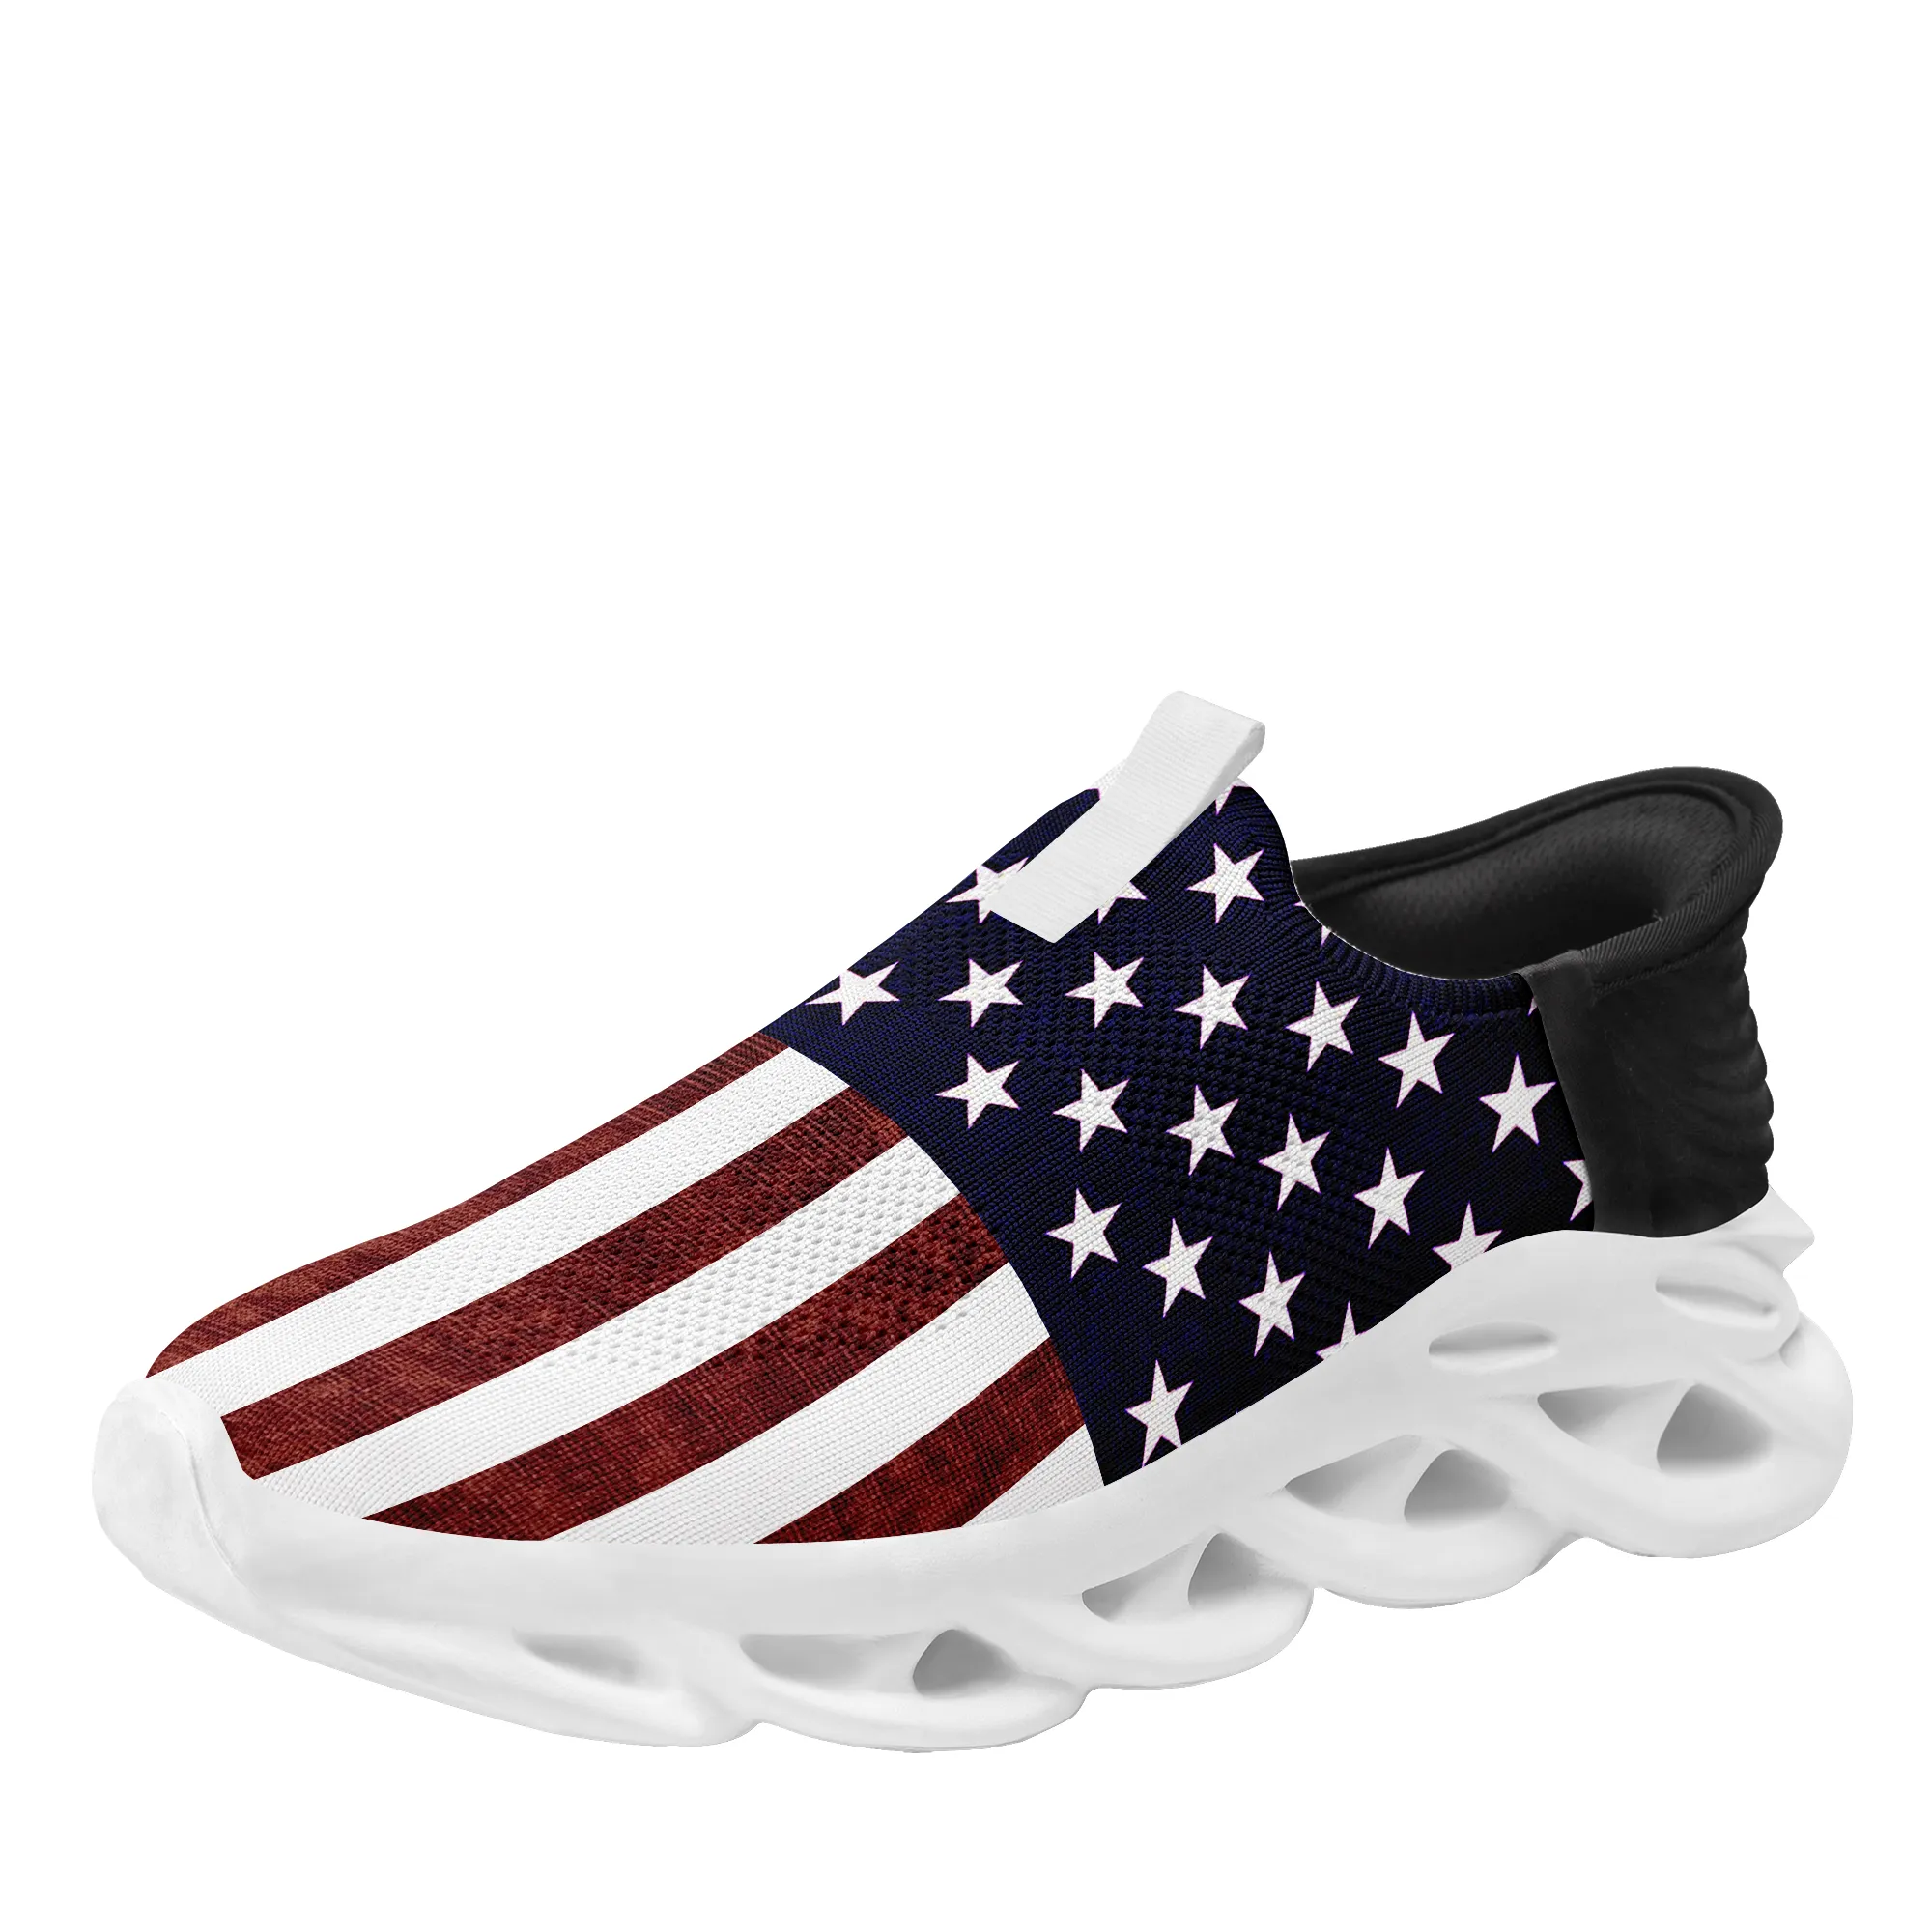 Coolcustomize Custom США национальный флаг звезда унисекс кроссовки персонализированные американские патриотические слипоны легкие бег теннис MS ходьба Мужчины женщины спортивная обувь